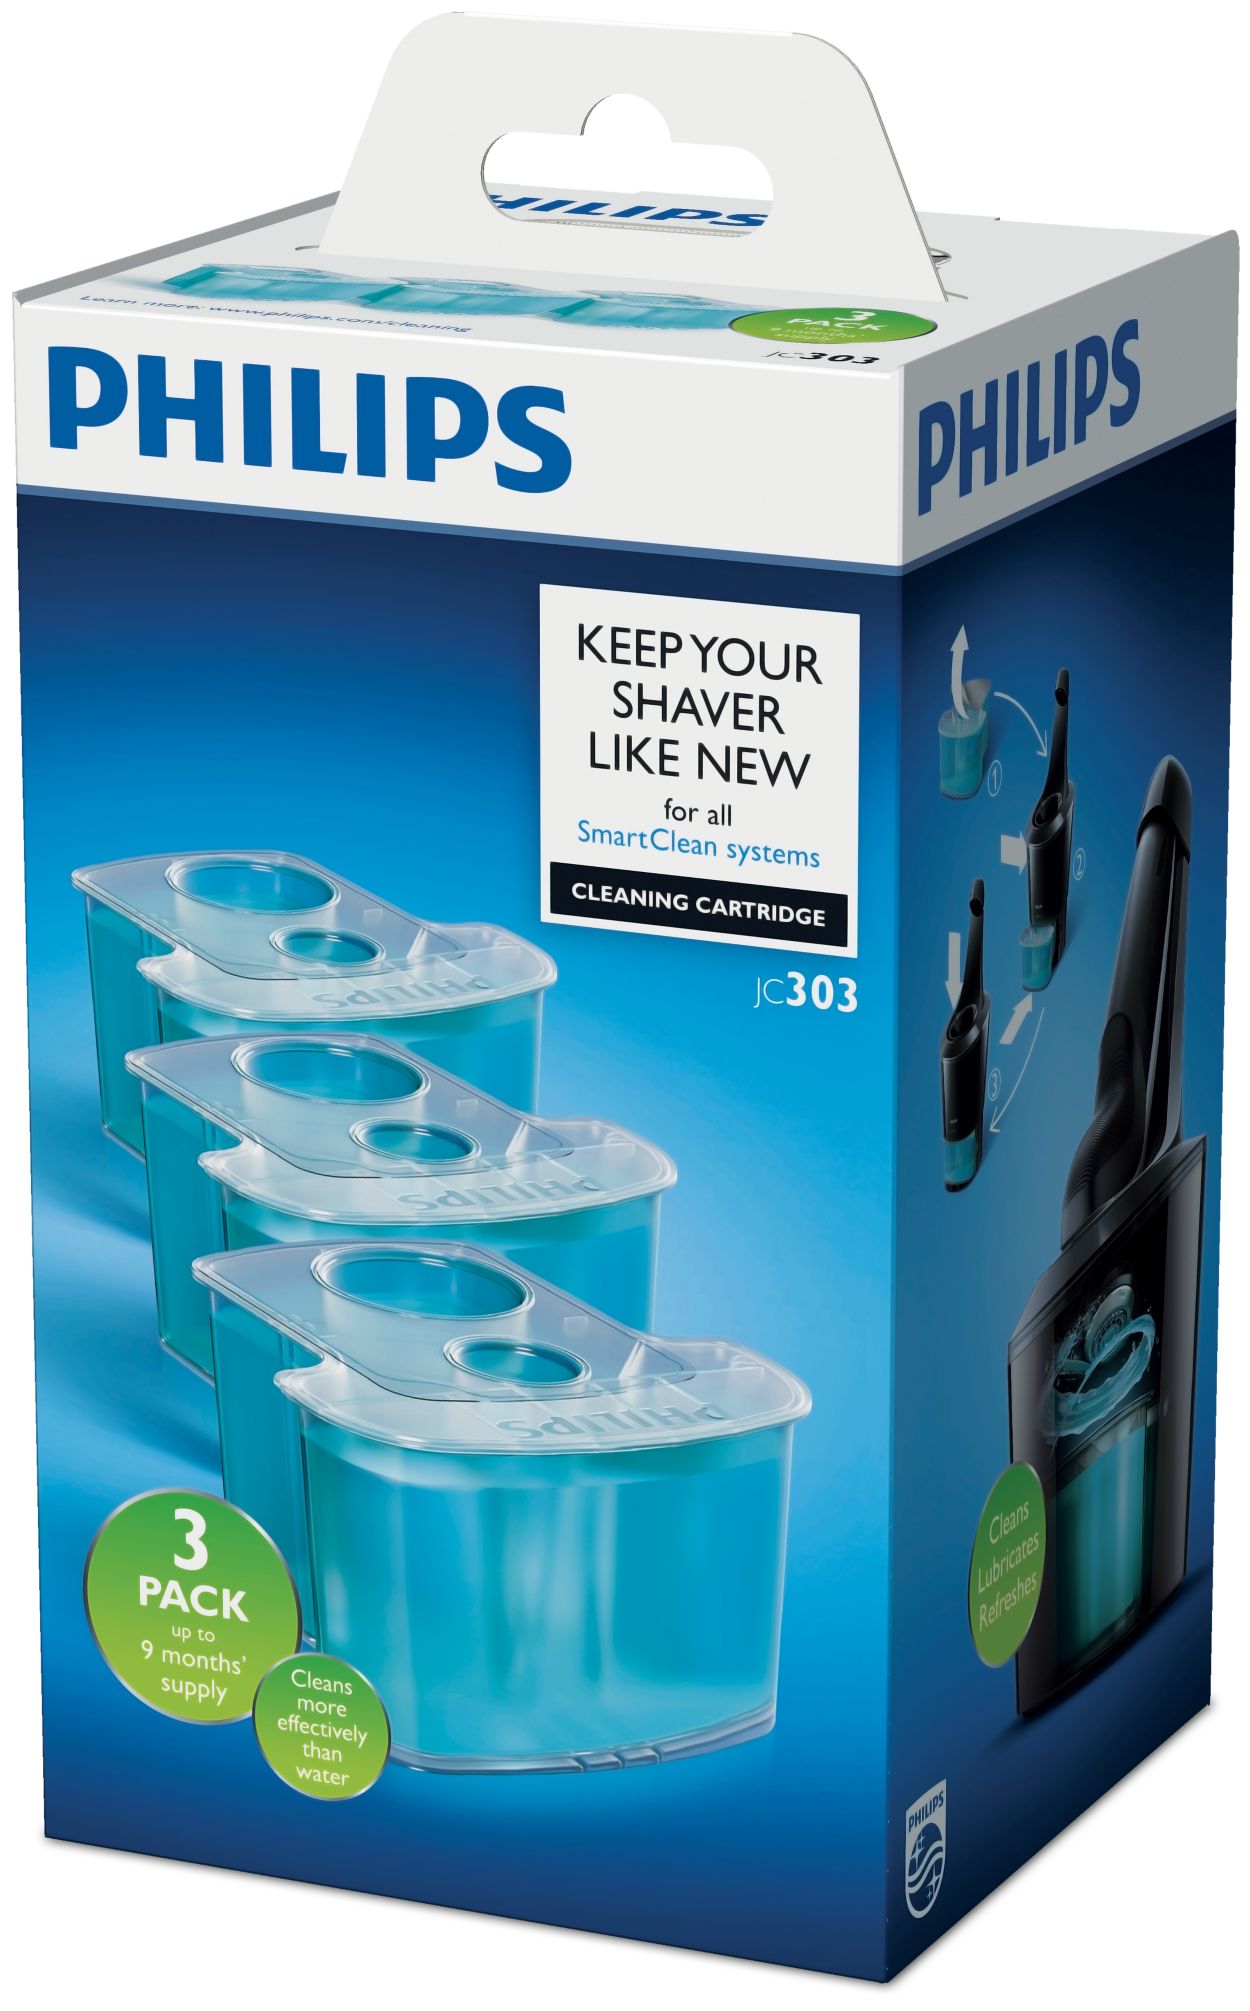 Reinigungs mittel für Philips Elektro rasierer Reinigungs sitz hq200 Reinigungs  flüssigkeit jc305 rq12 s7000 8000 9000 jc301 302 - AliExpress